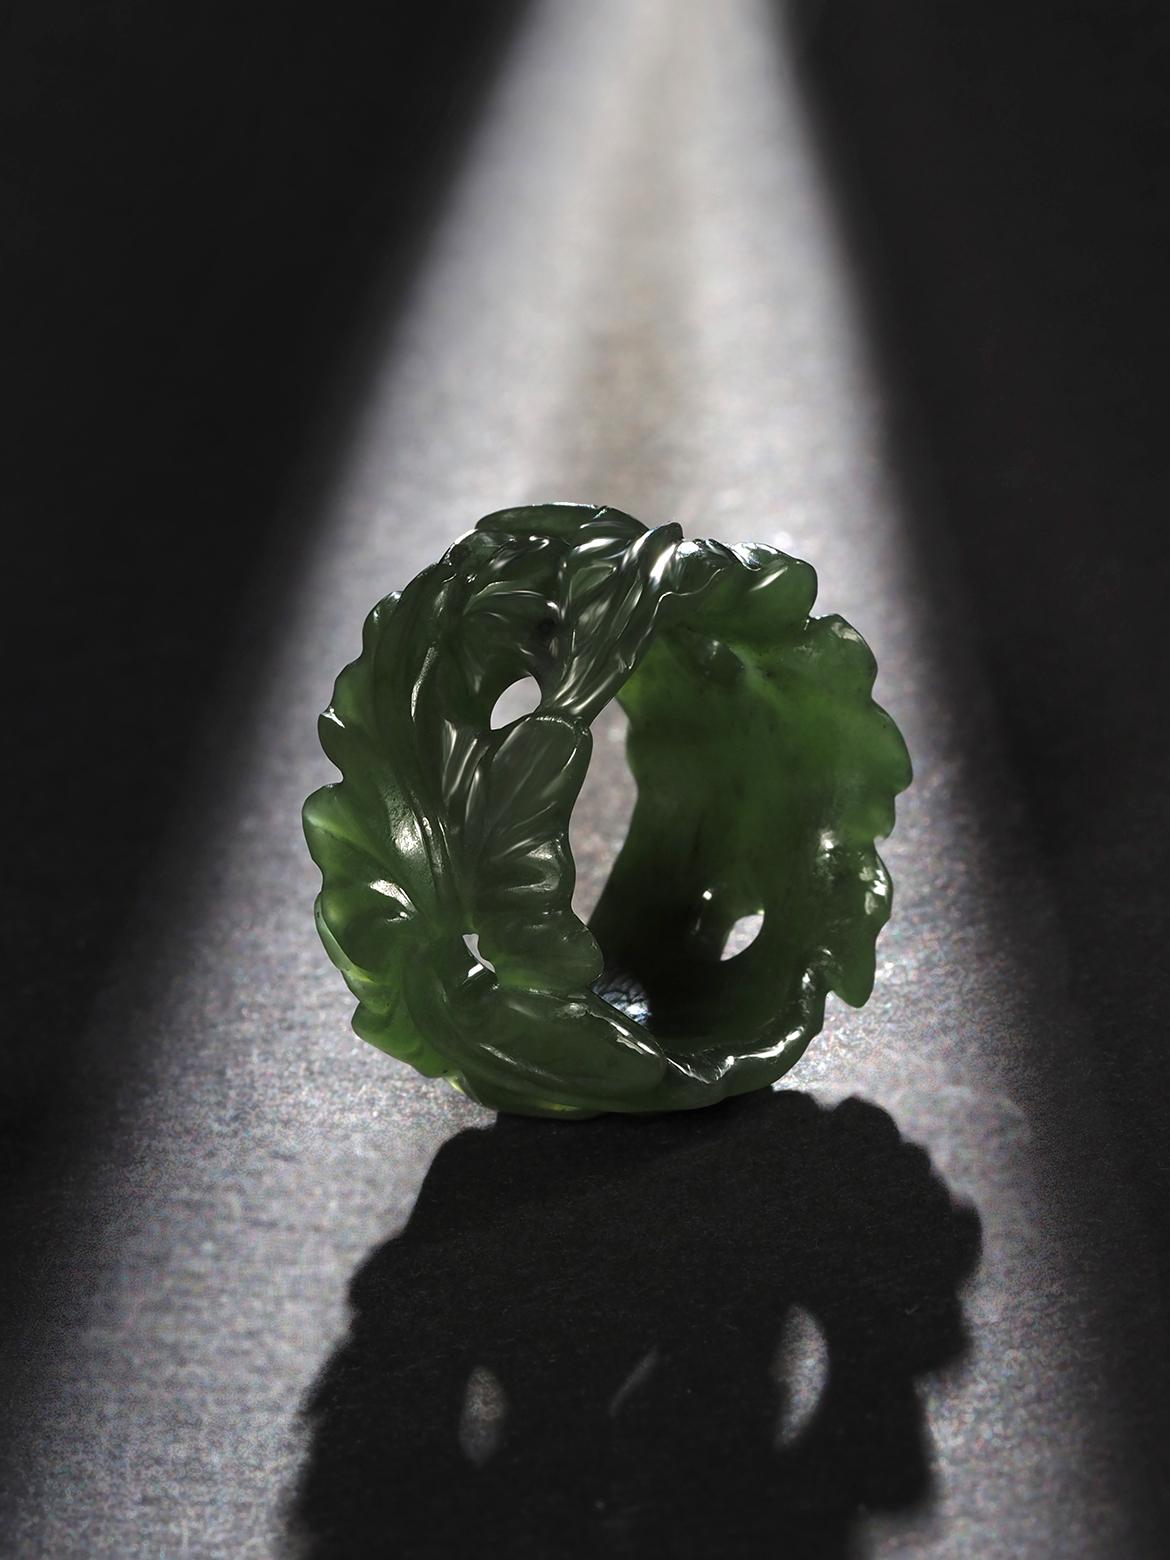 Bague unique en Jade vert de Lierre sculptée à la main, fabriquée à Paris
Taille de la bague - 8.25 US
poids de la bague 9 grammes

Voici notre exquise bague en jade de la collection Ivy, une véritable œuvre d'art fabriquée à la main dans l'atelier